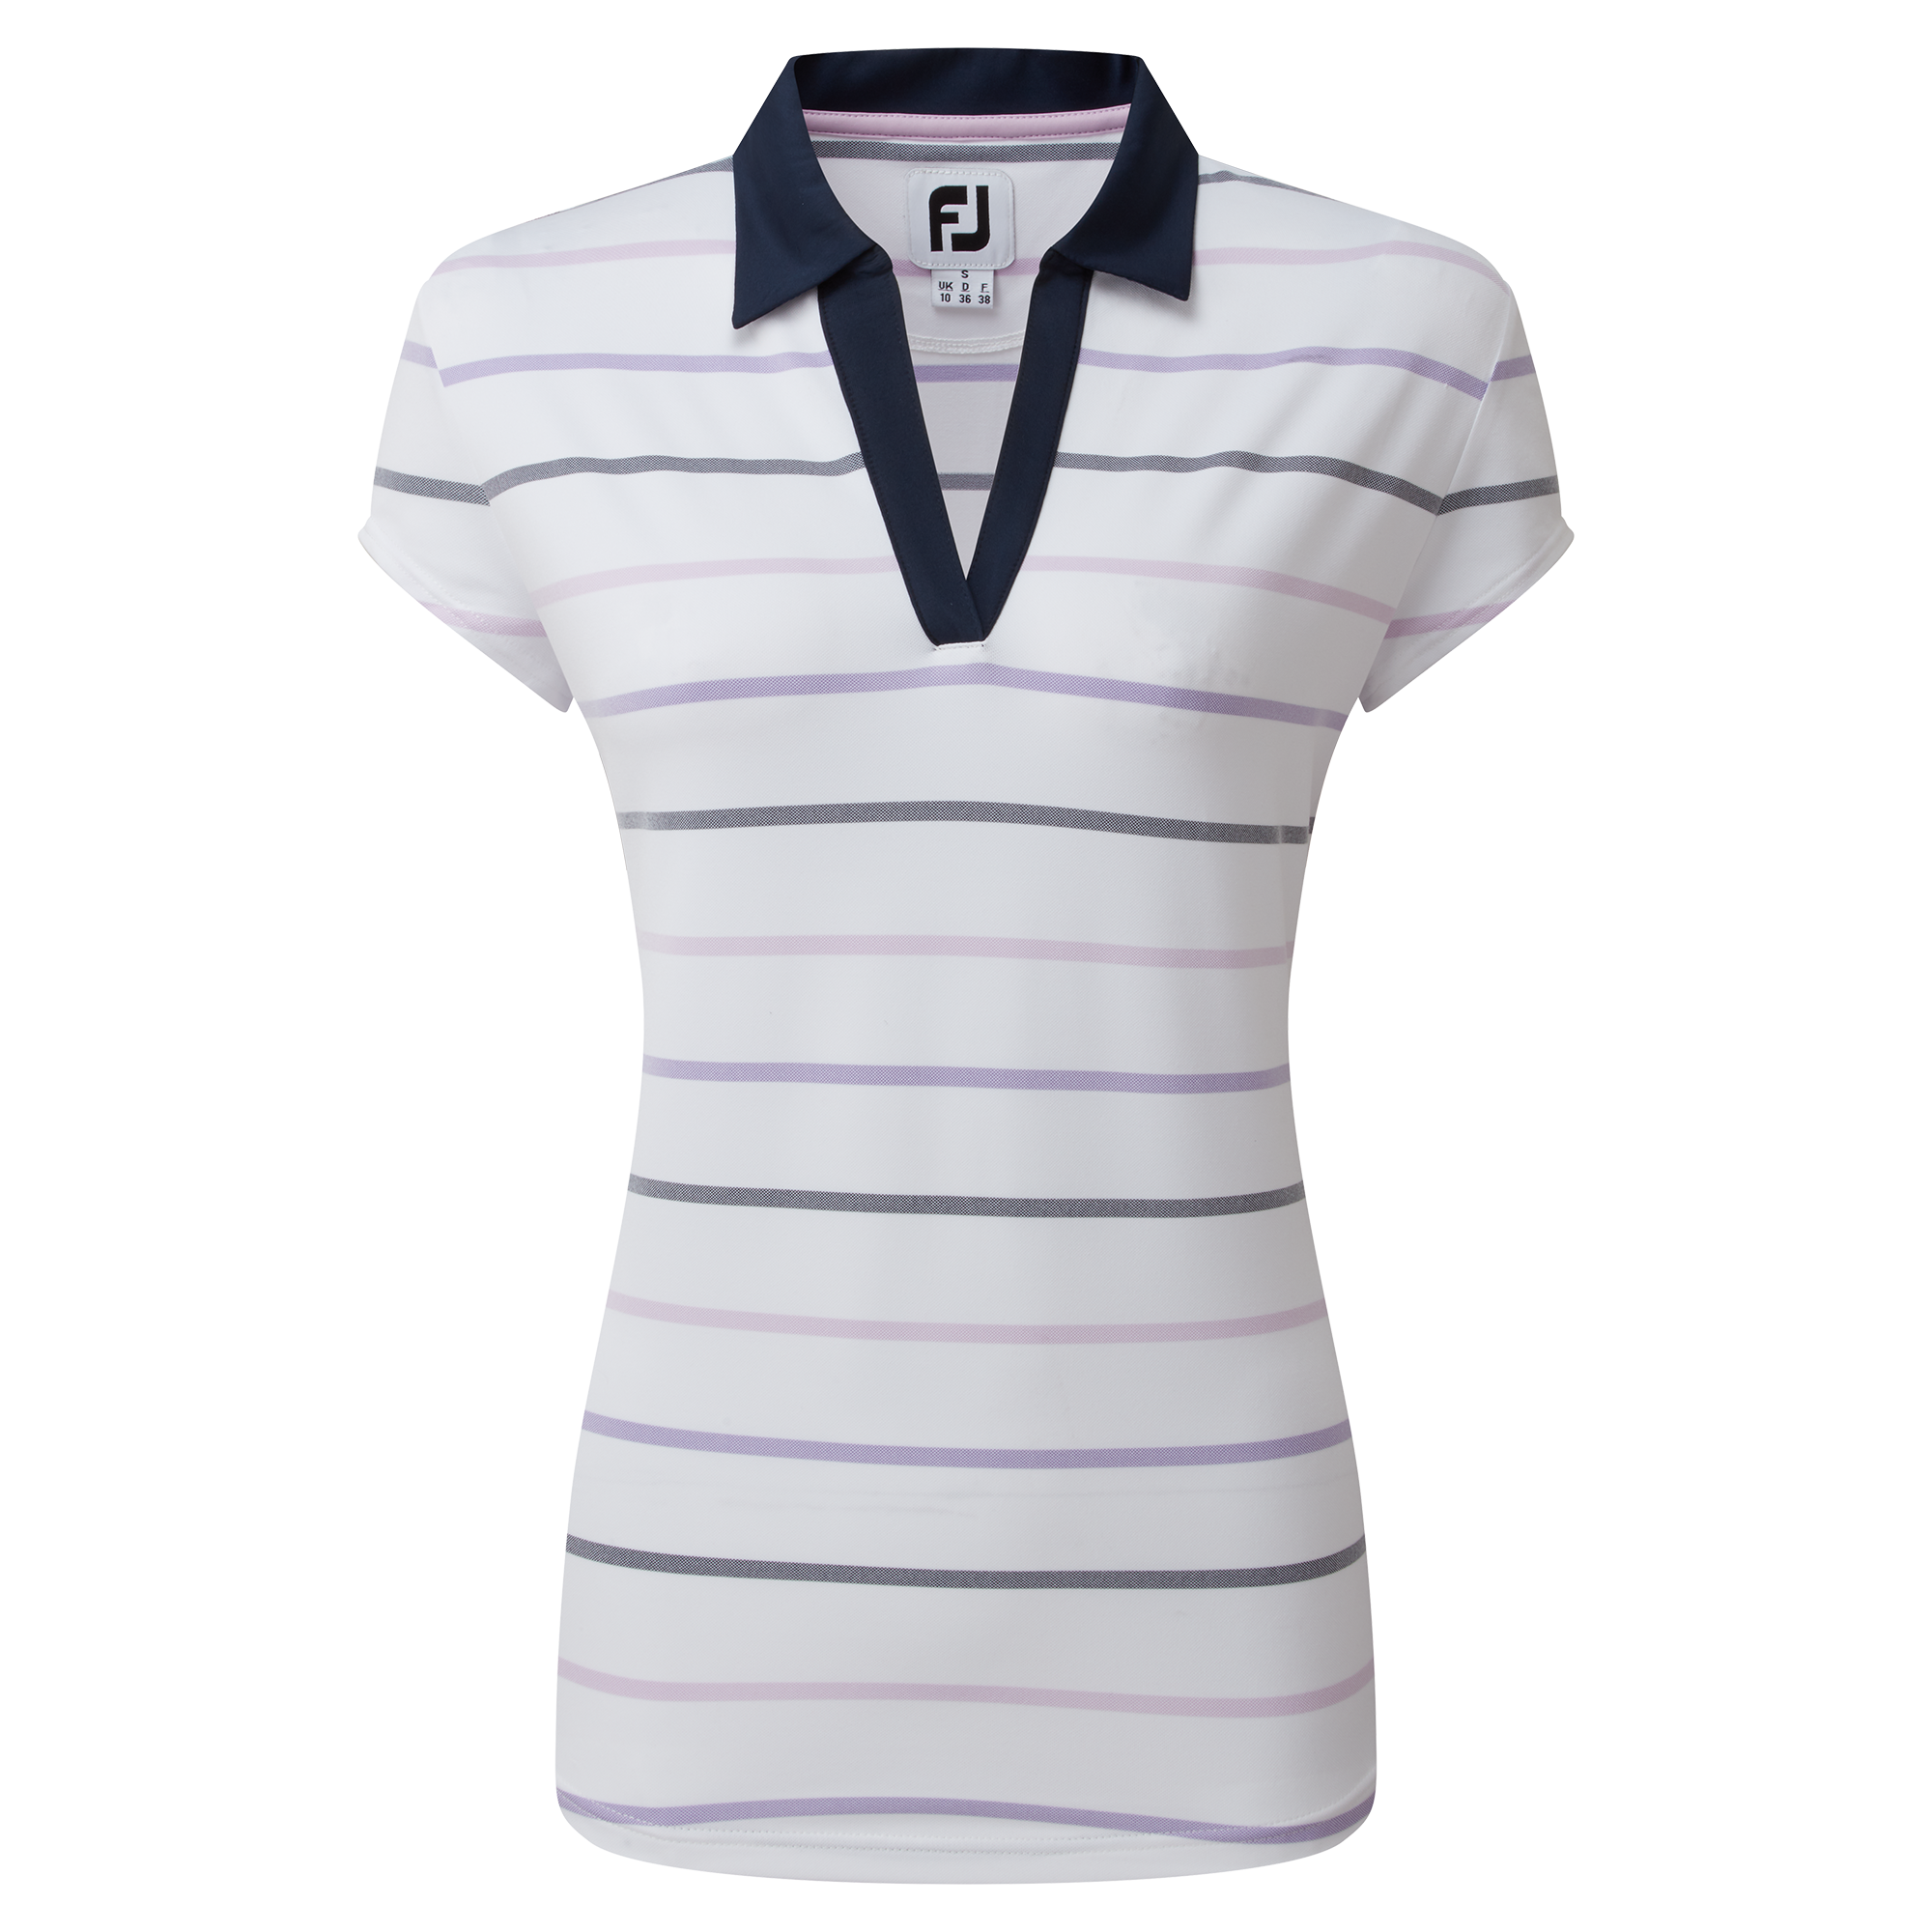 FootJoy Birdseye Stripe Smooth Jacquard dámské golfové triko, bílé, vel. XS